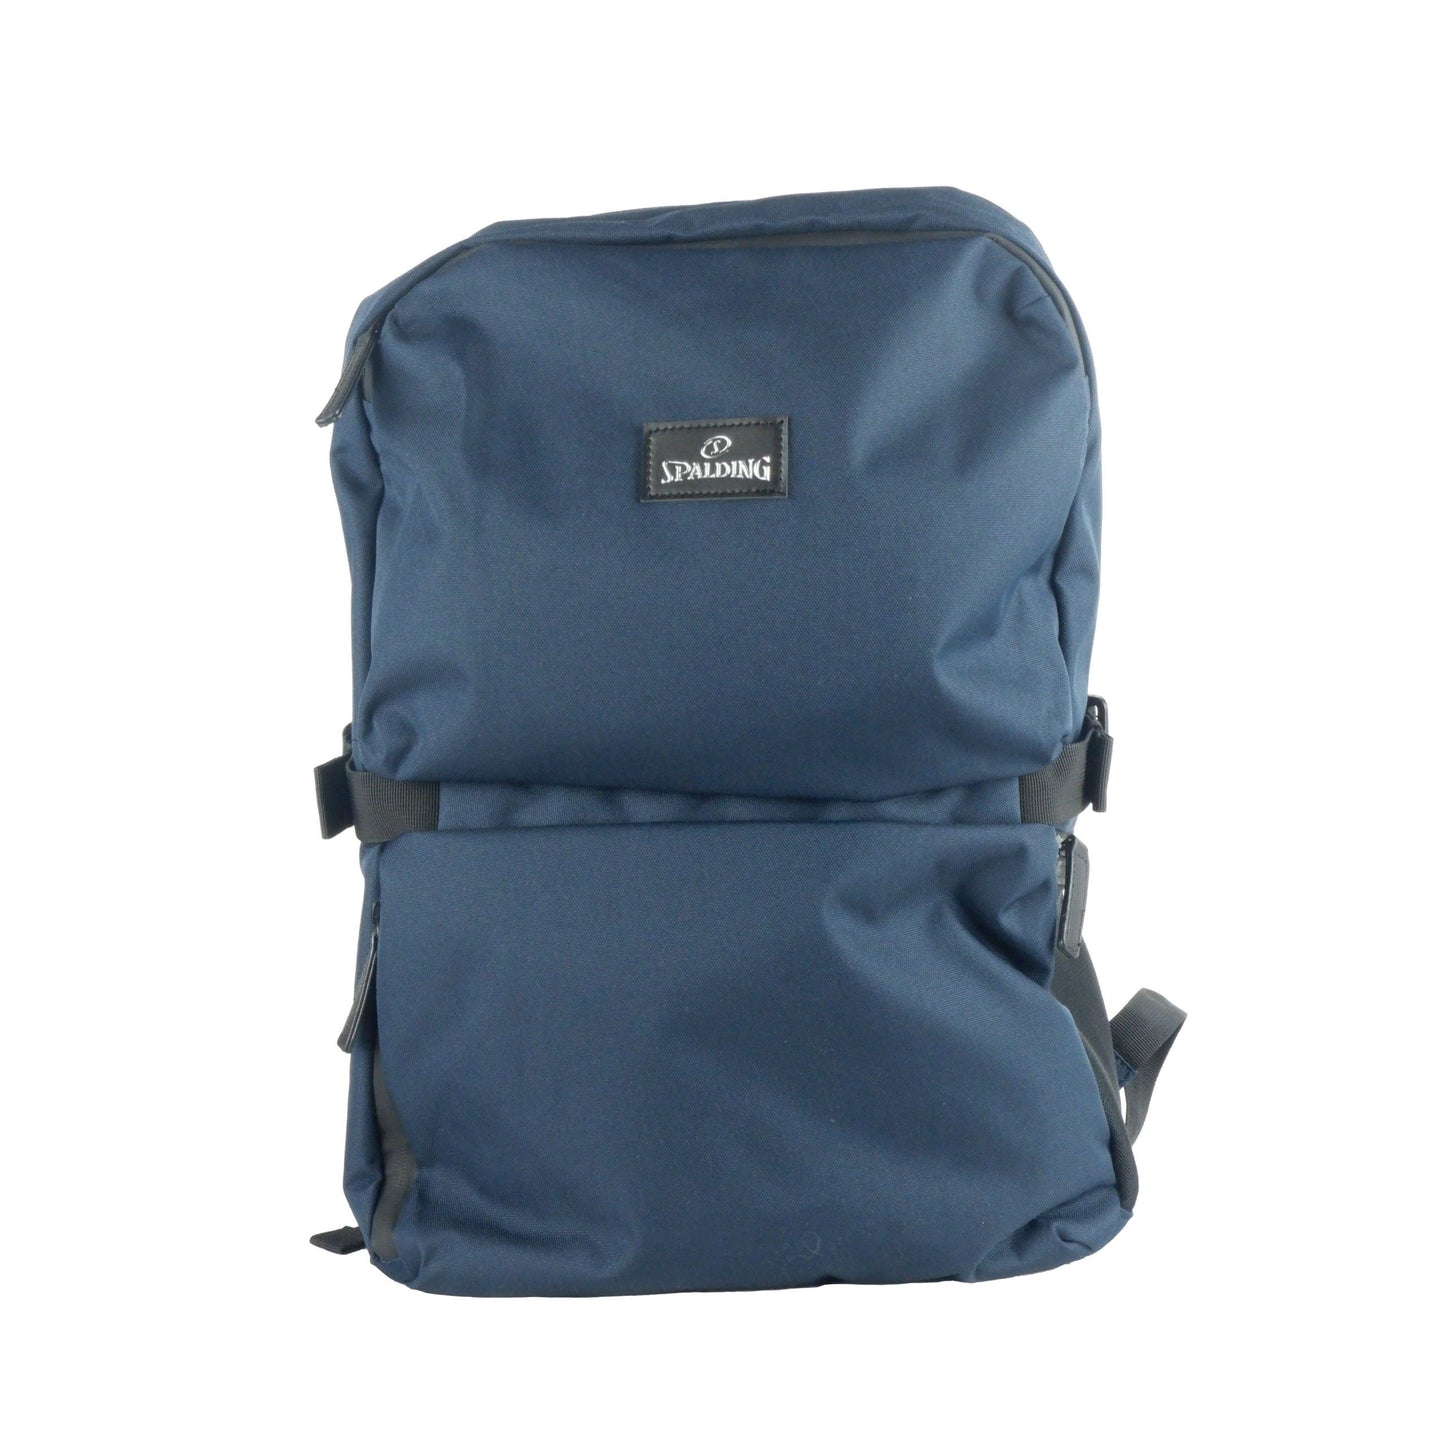 Elegant Big Backpack in Classic Blue